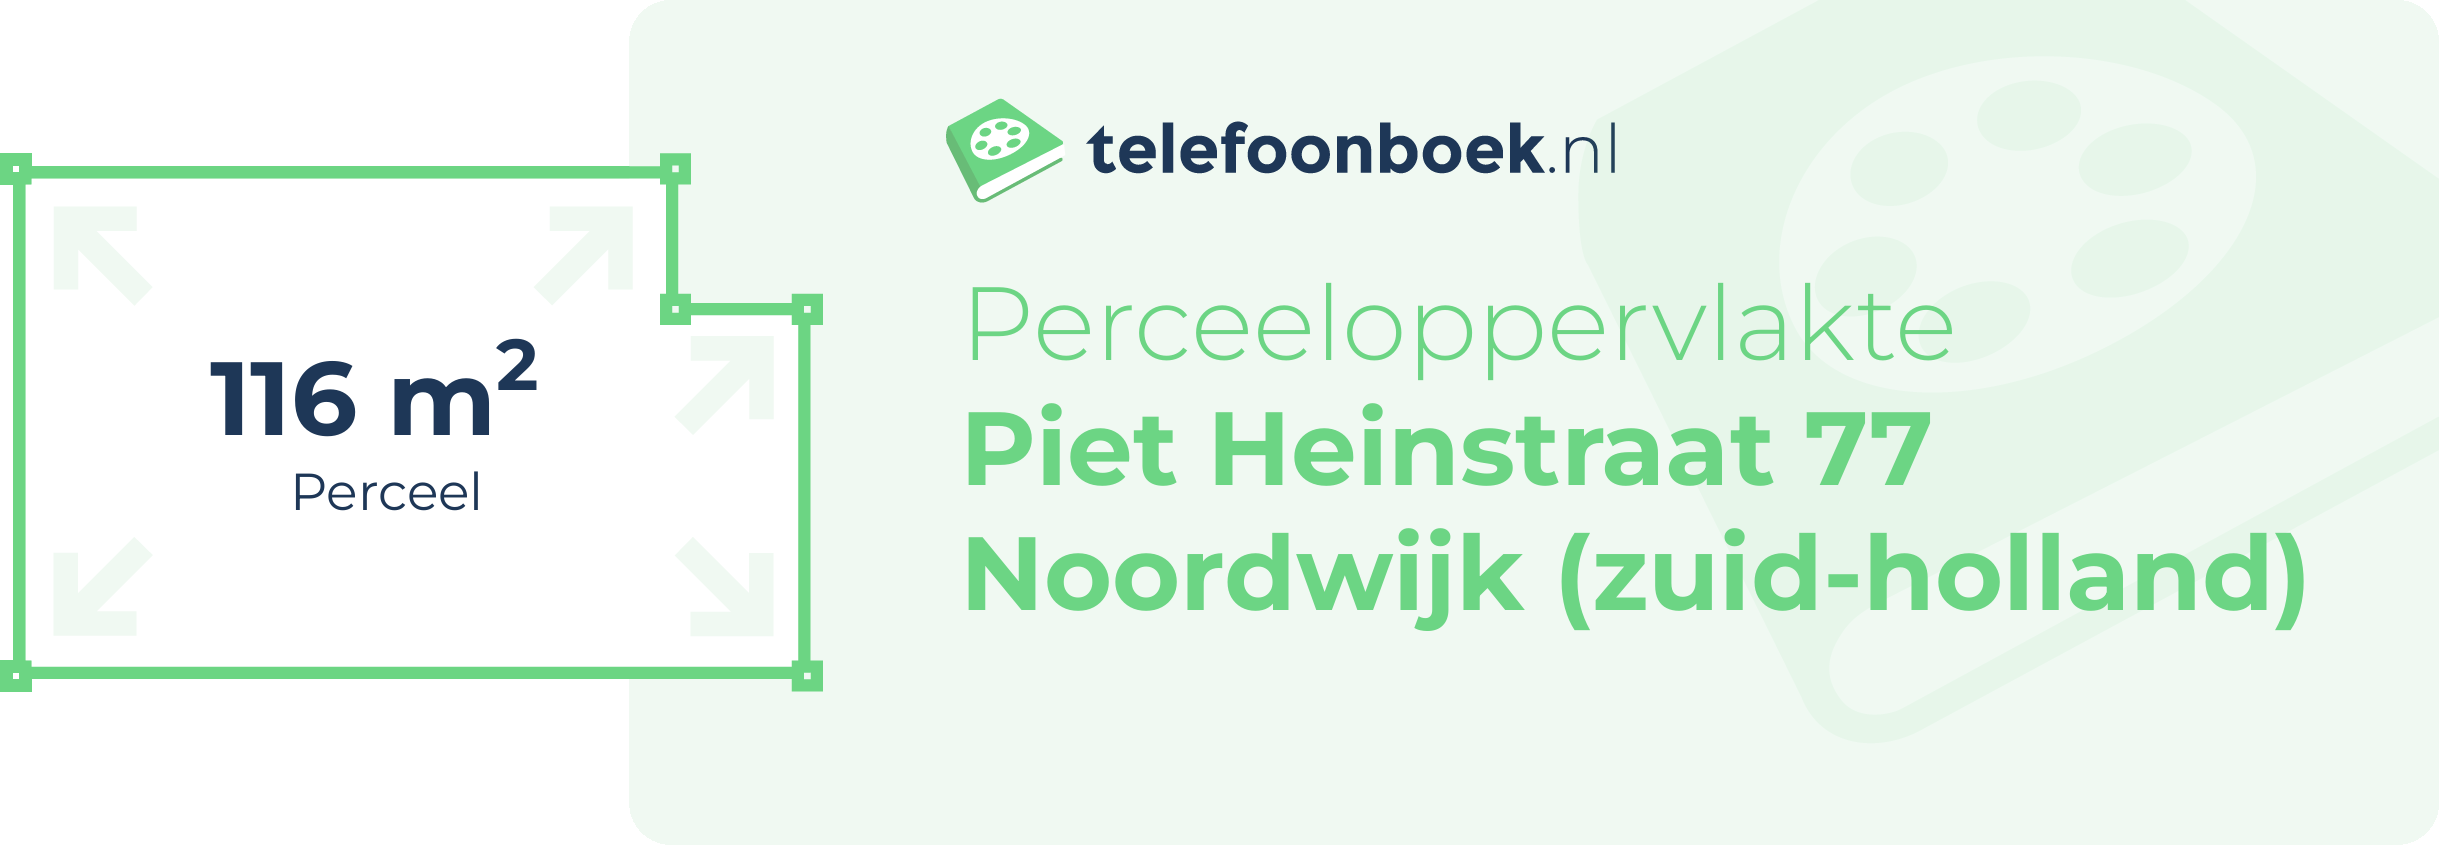 Perceeloppervlakte Piet Heinstraat 77 Noordwijk (Zuid-Holland)